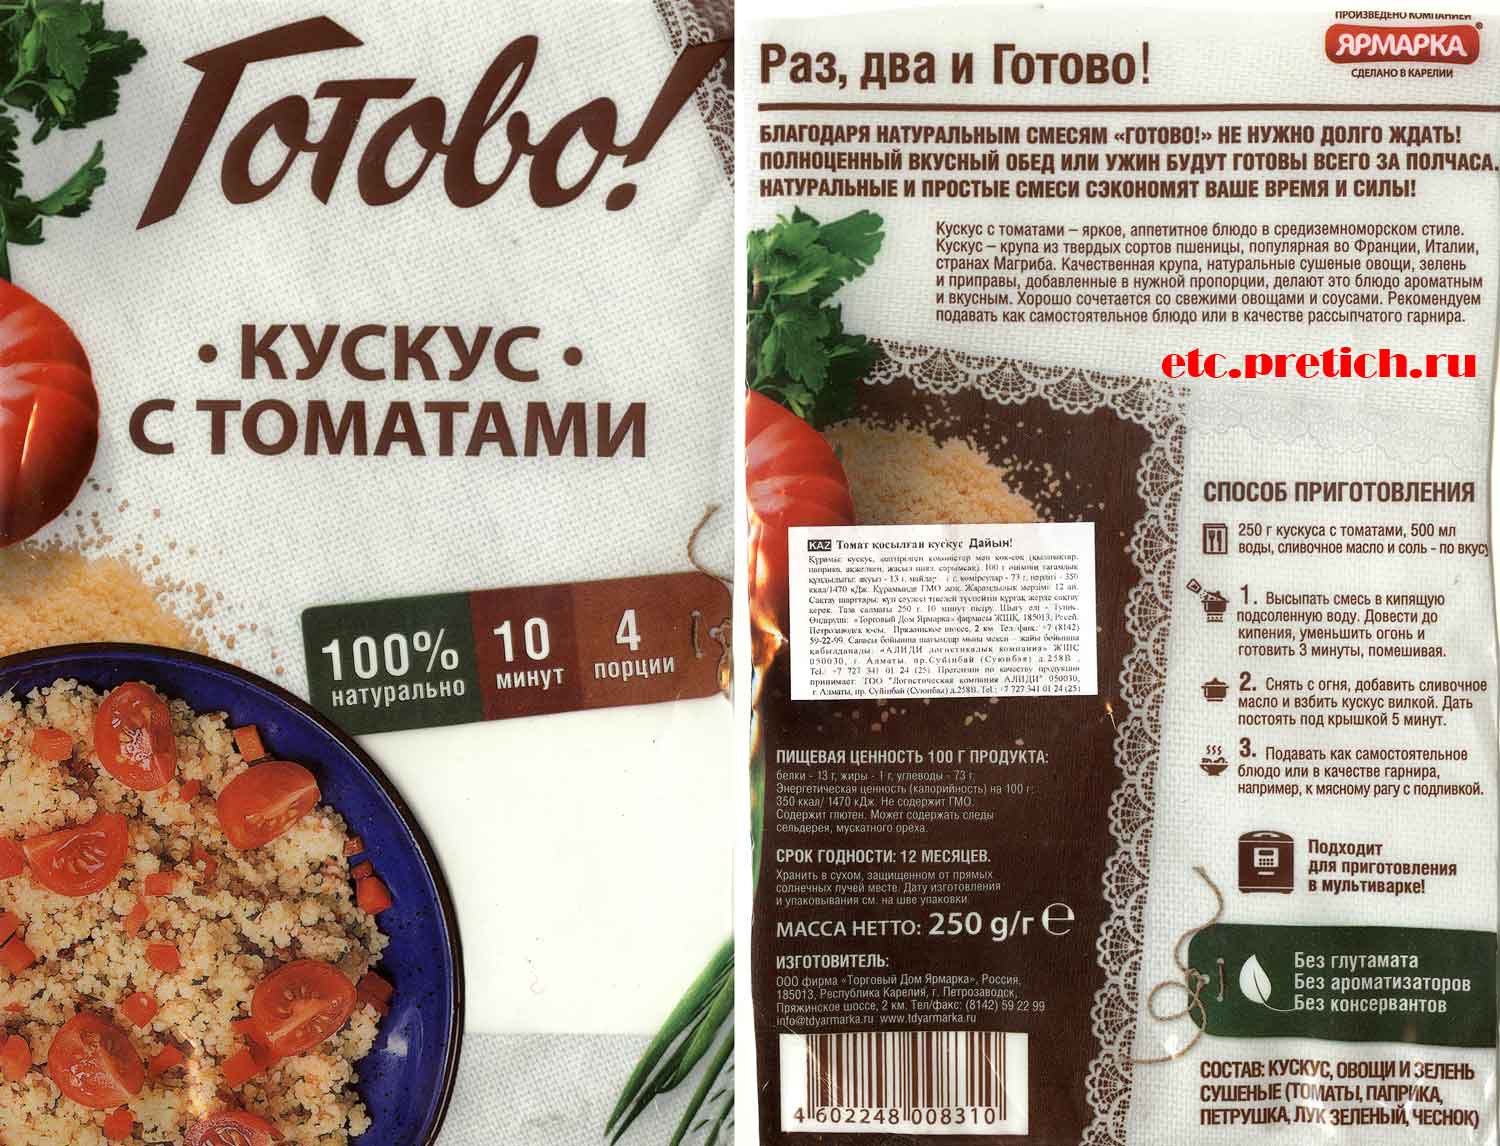 Готово! Кускус с томатами Торговый дом Ярмарка, Россия - отзыв и описание